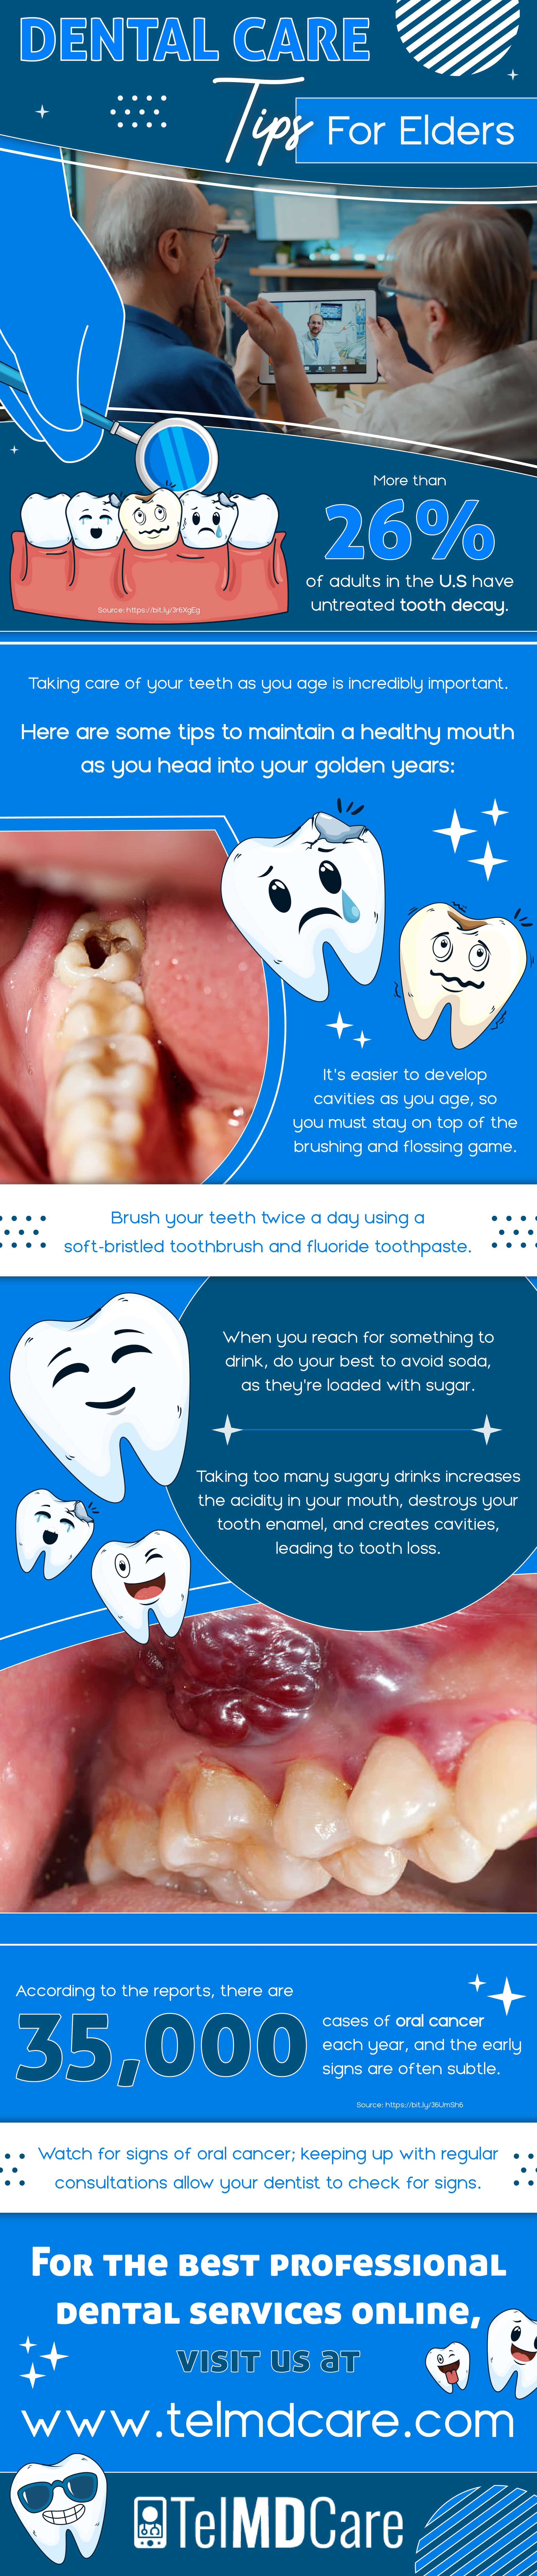 Dental care tips for elders